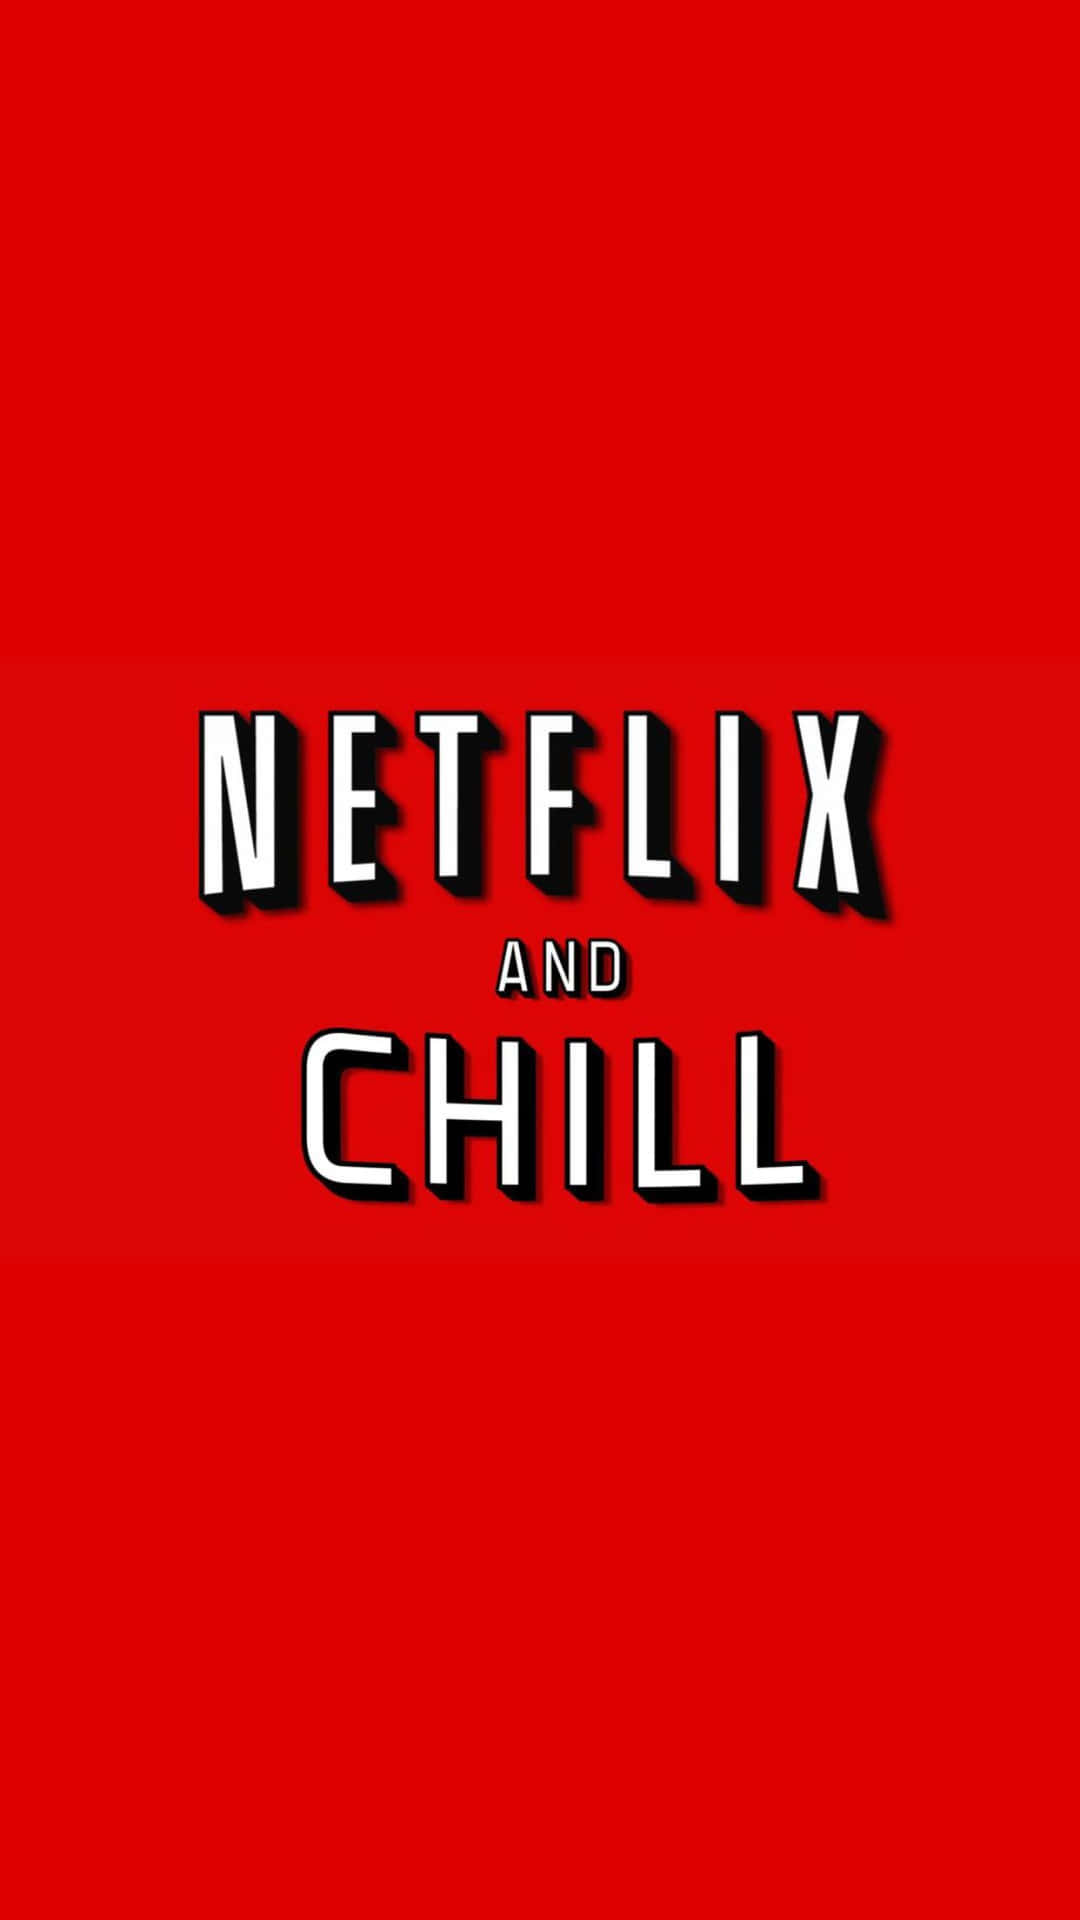 Netflix and chill logo - Netflix